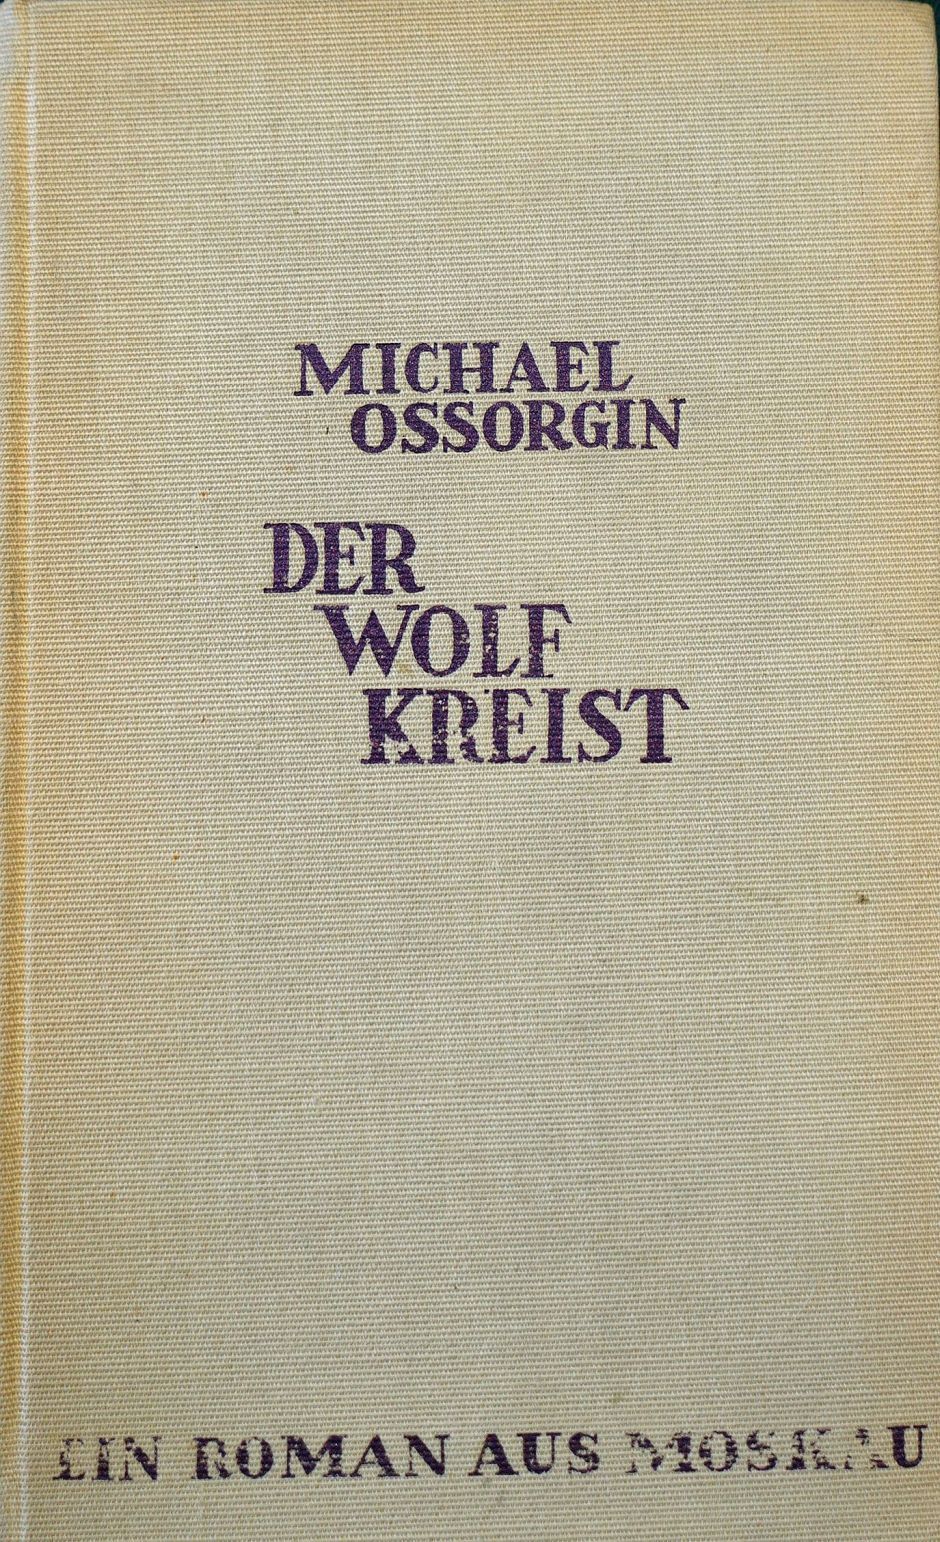 Lot 3330, Auction  115, Ossorgin, Michael, Der Wolf kreist